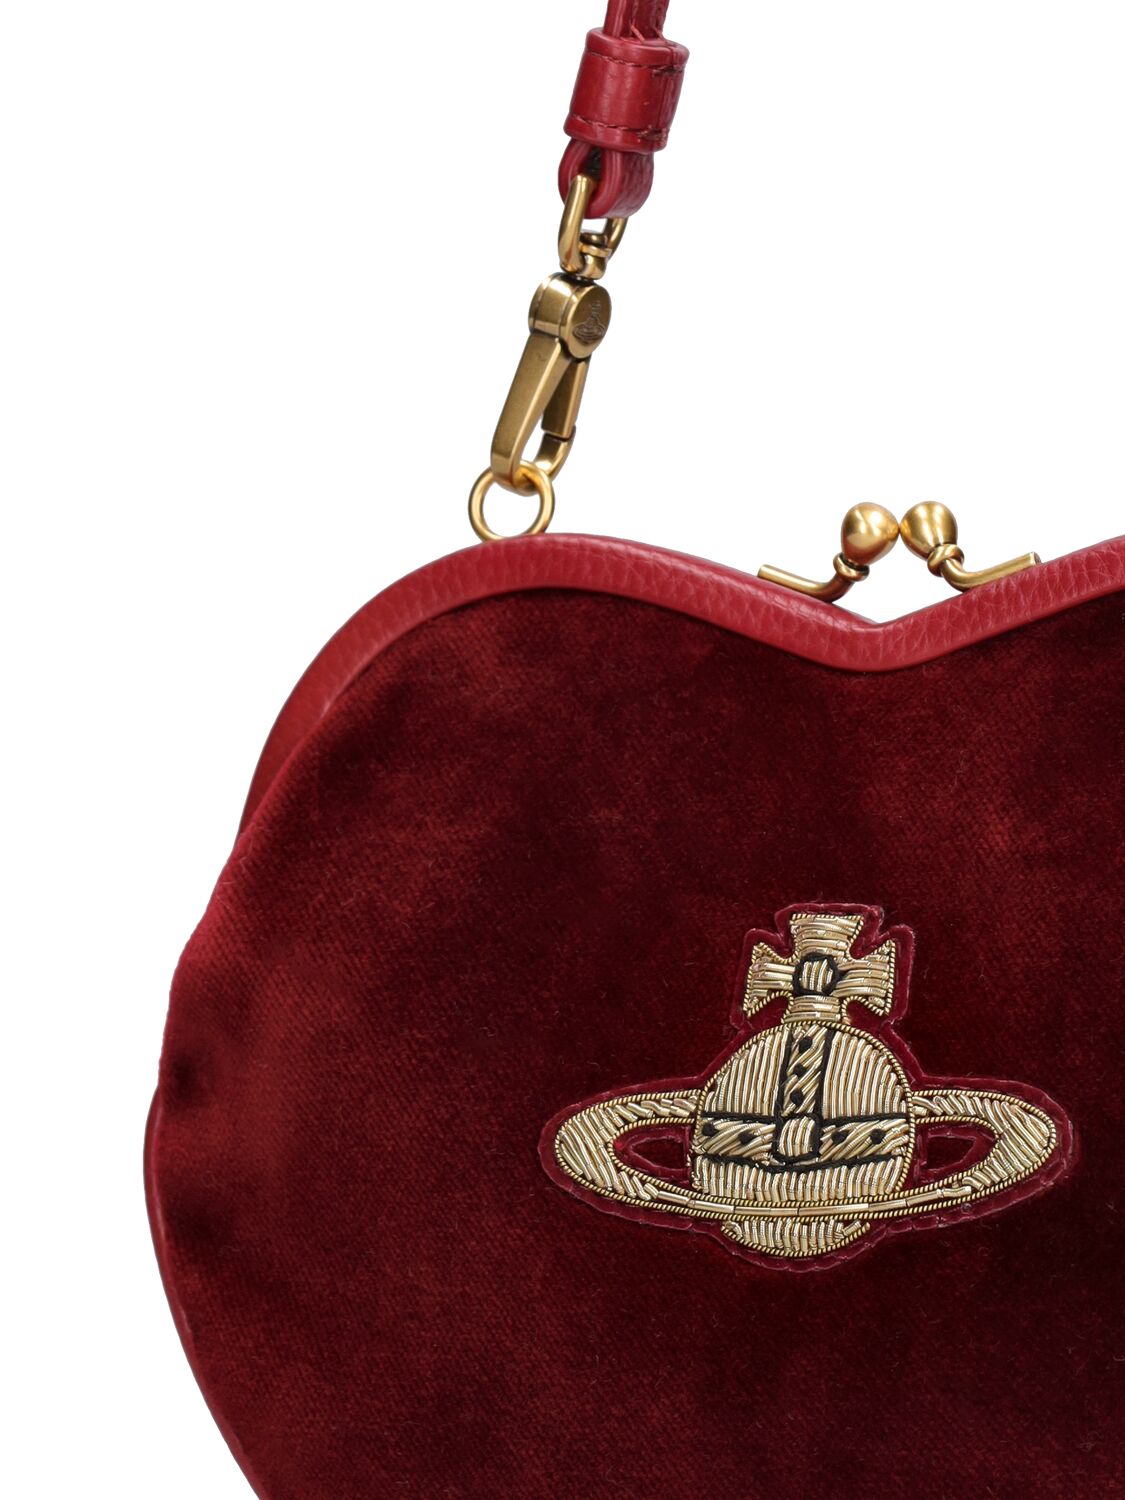 Vivienne Westwood Belle Heart Frame Top Handle Bag In Burgundy